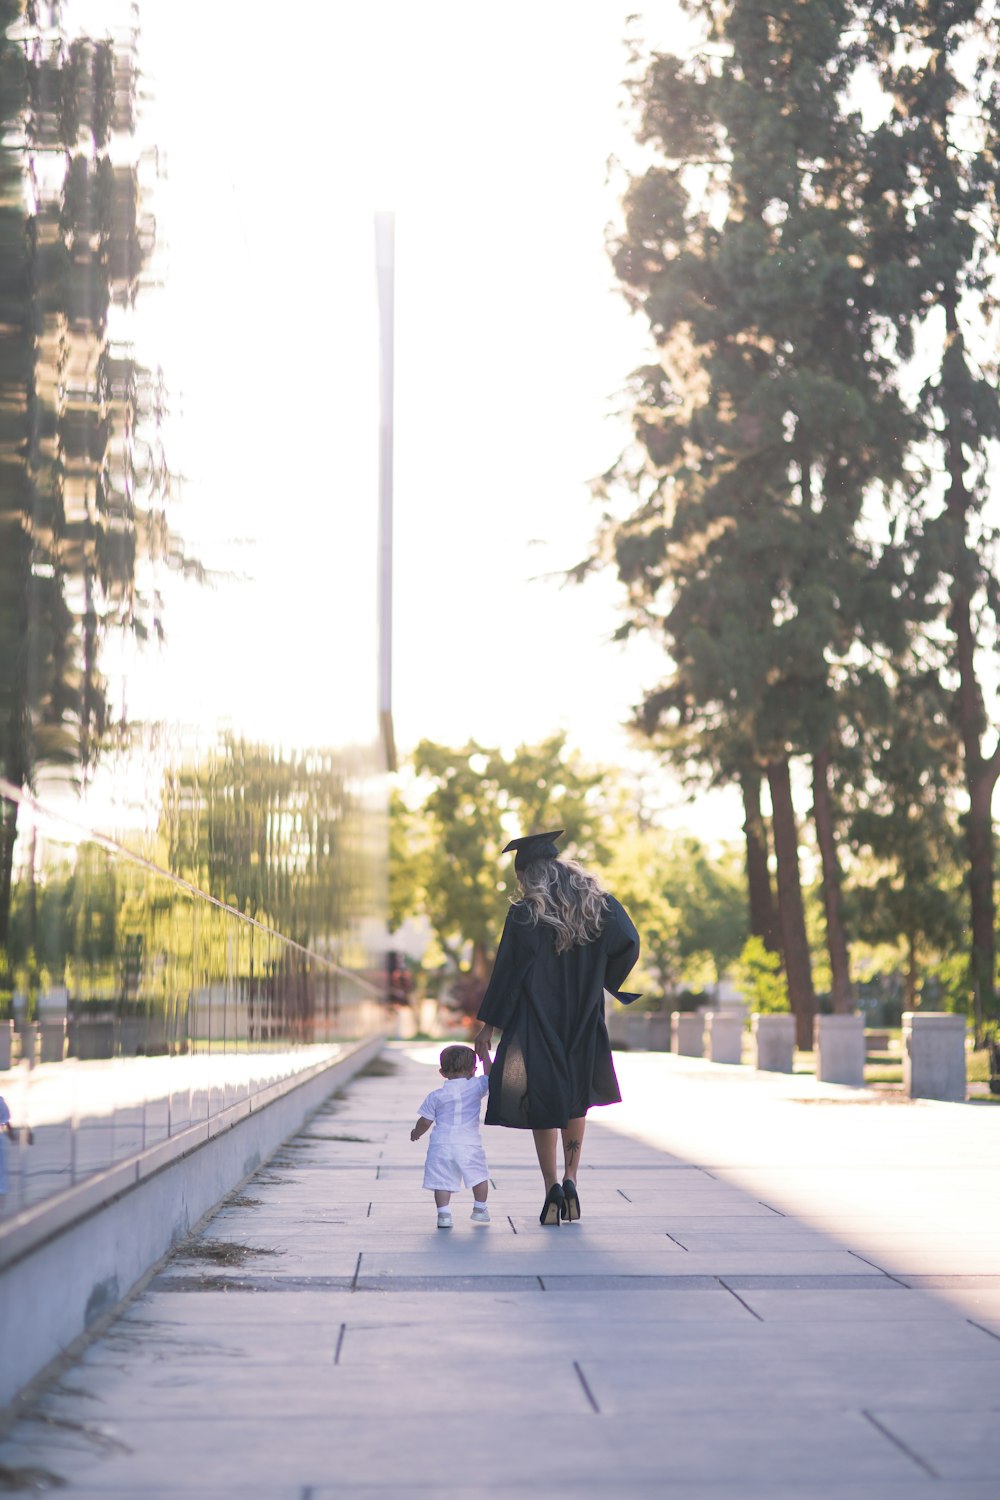 Persona in felpa con cappuccio nera che cammina sul marciapiede durante il giorno